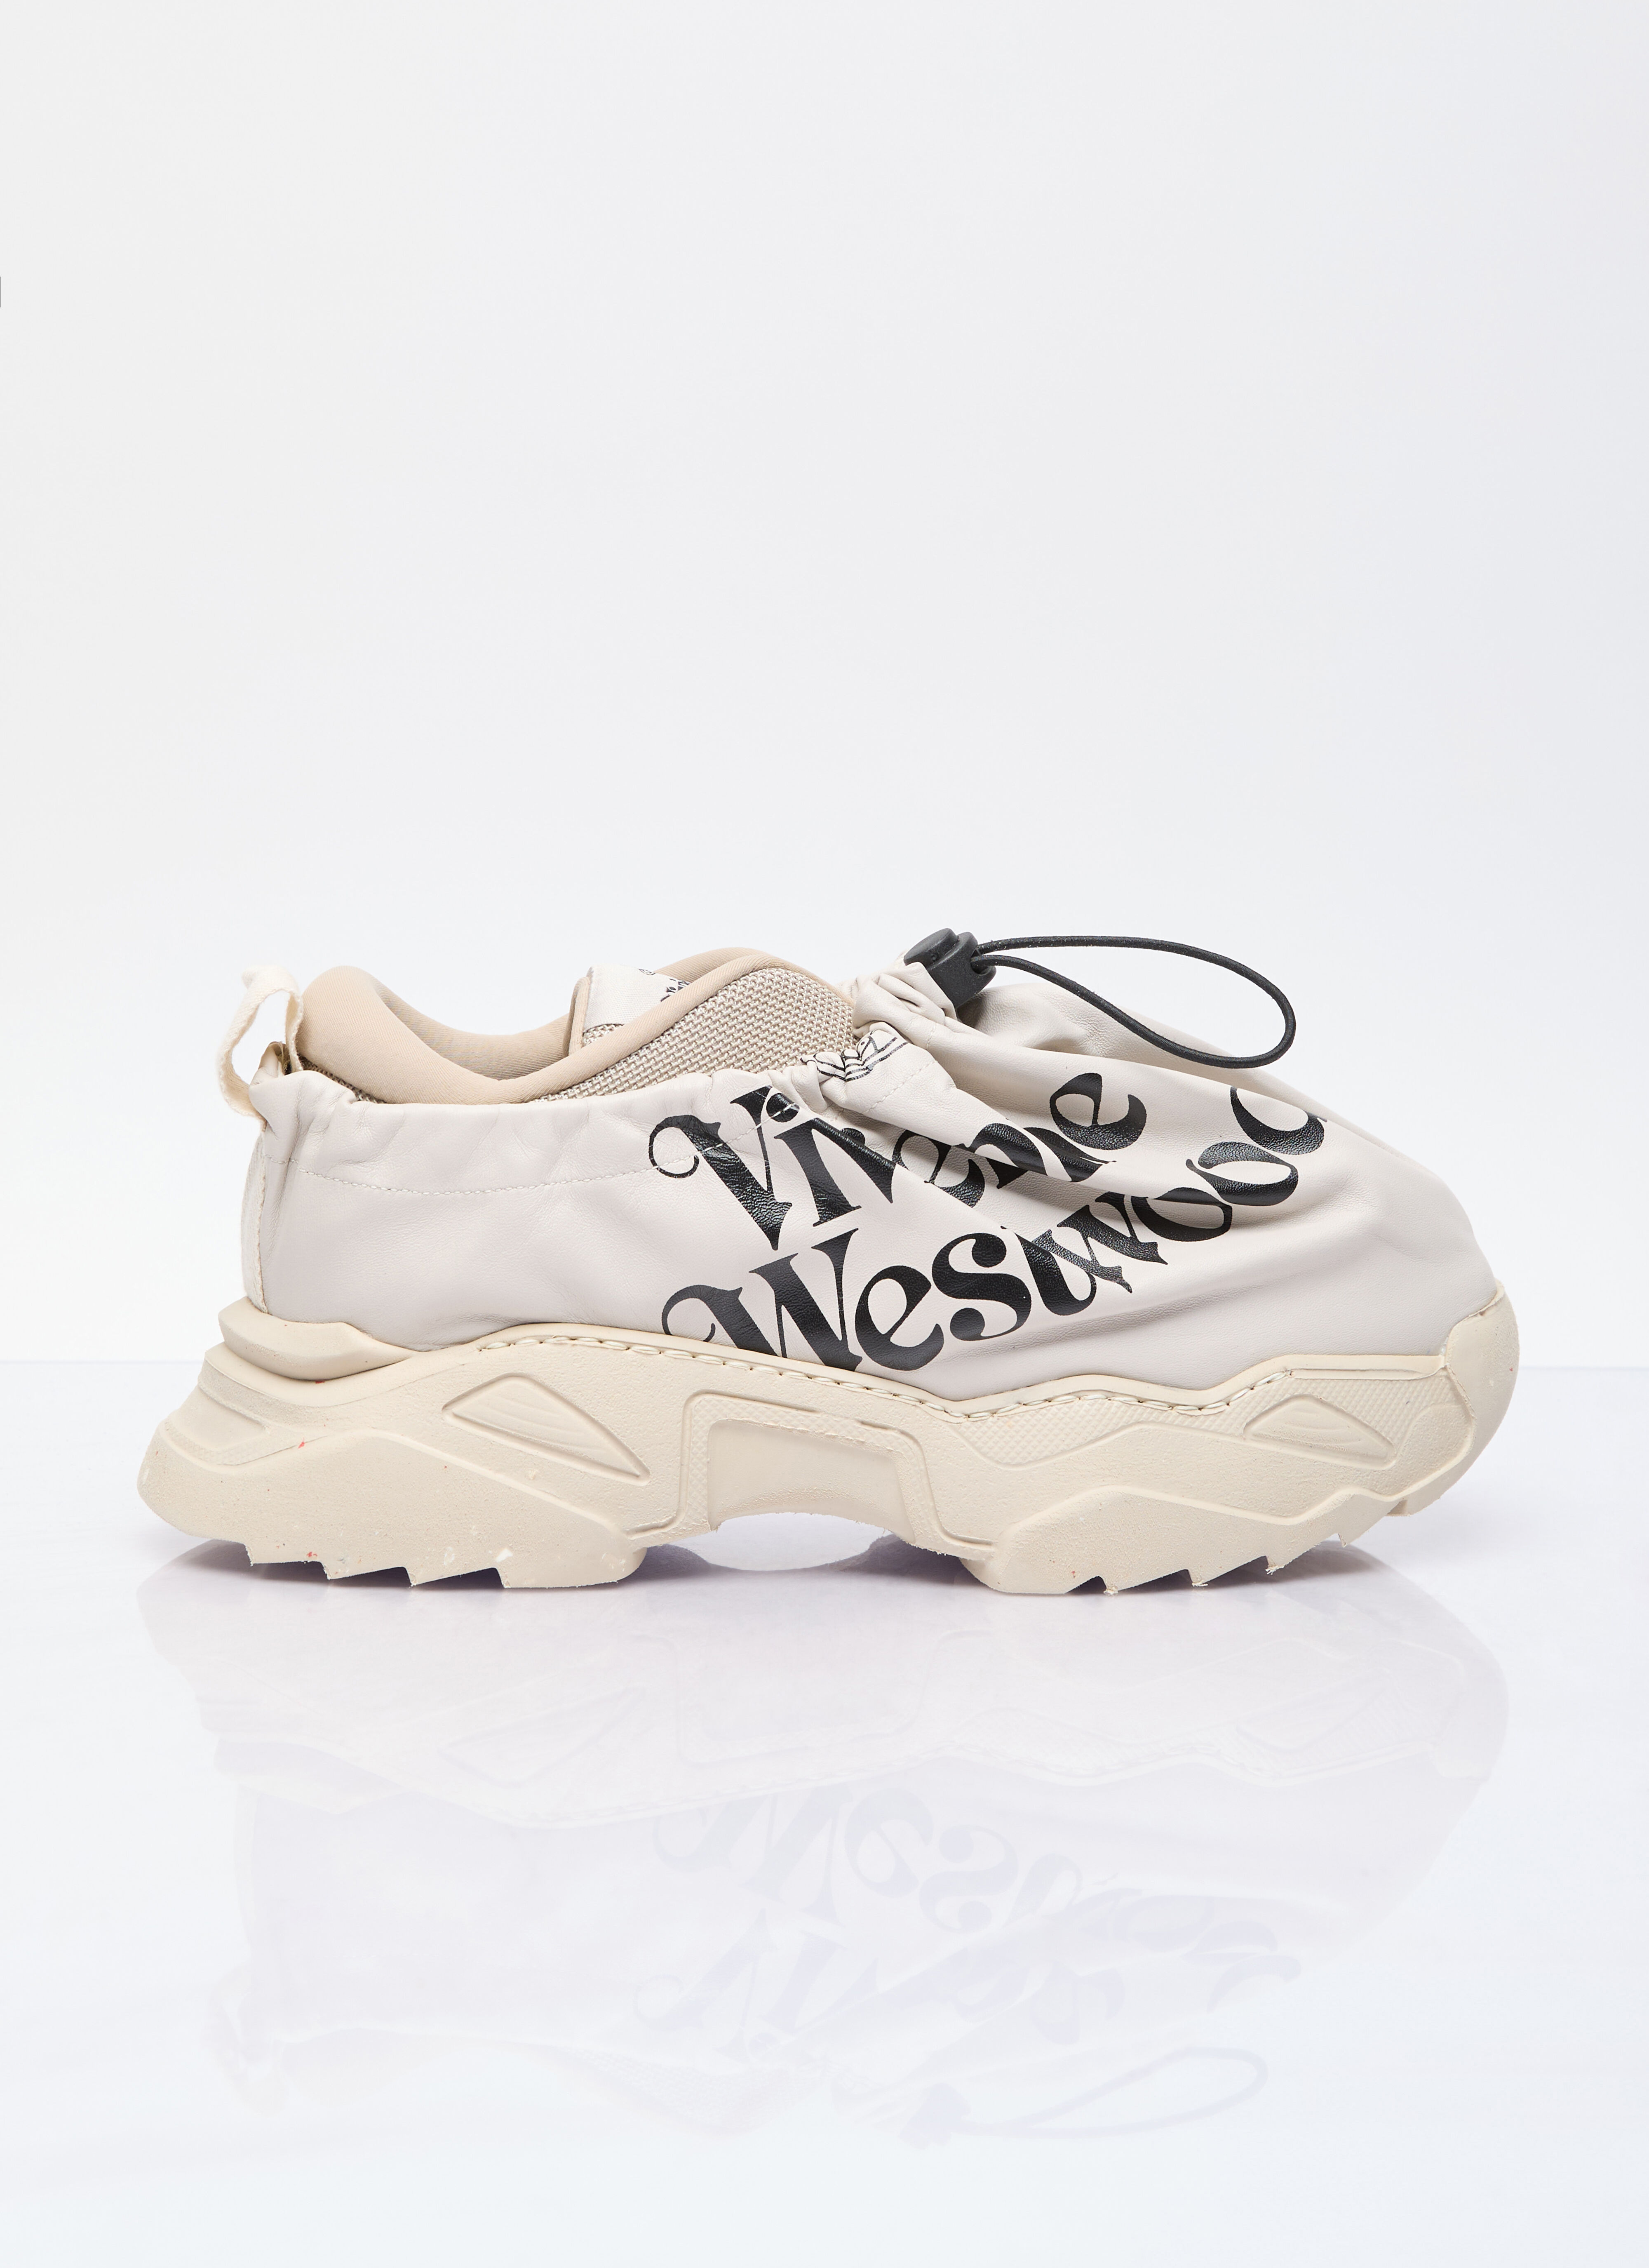 Vivienne Westwood Romper Bag Sneakers Cream vvw0157004